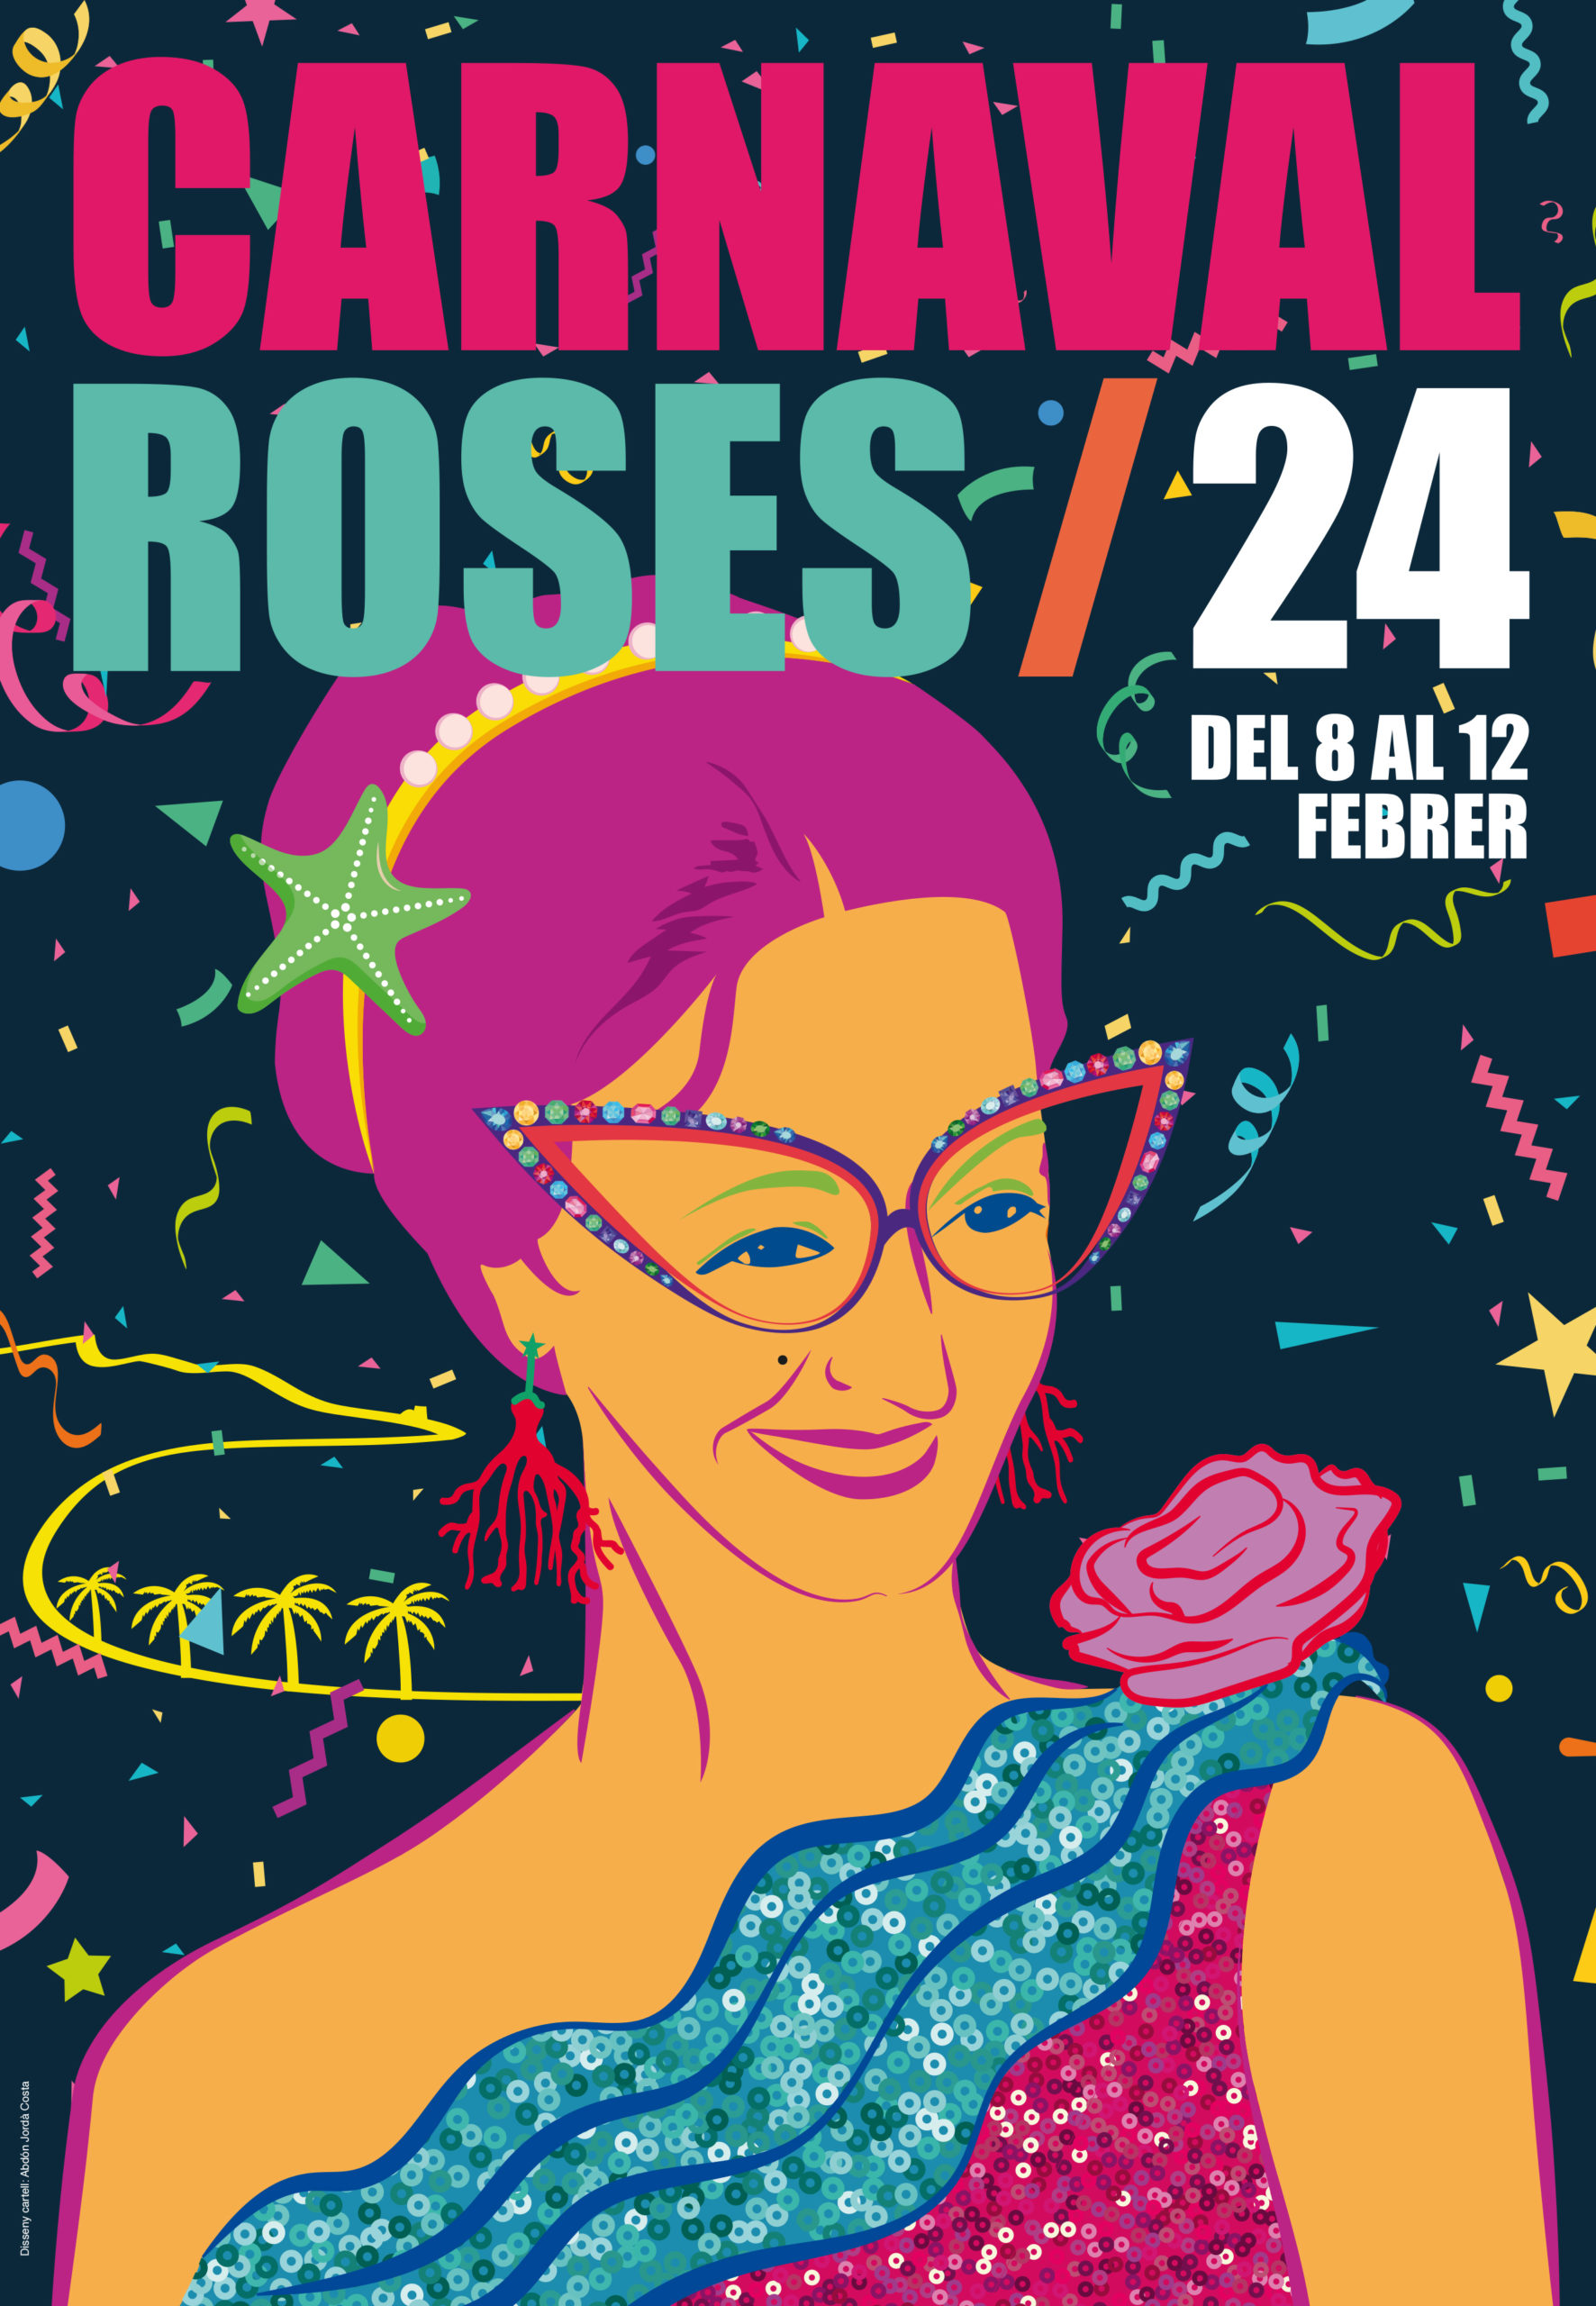 Programació Carnaval de Roses 2024 Guia de Roses